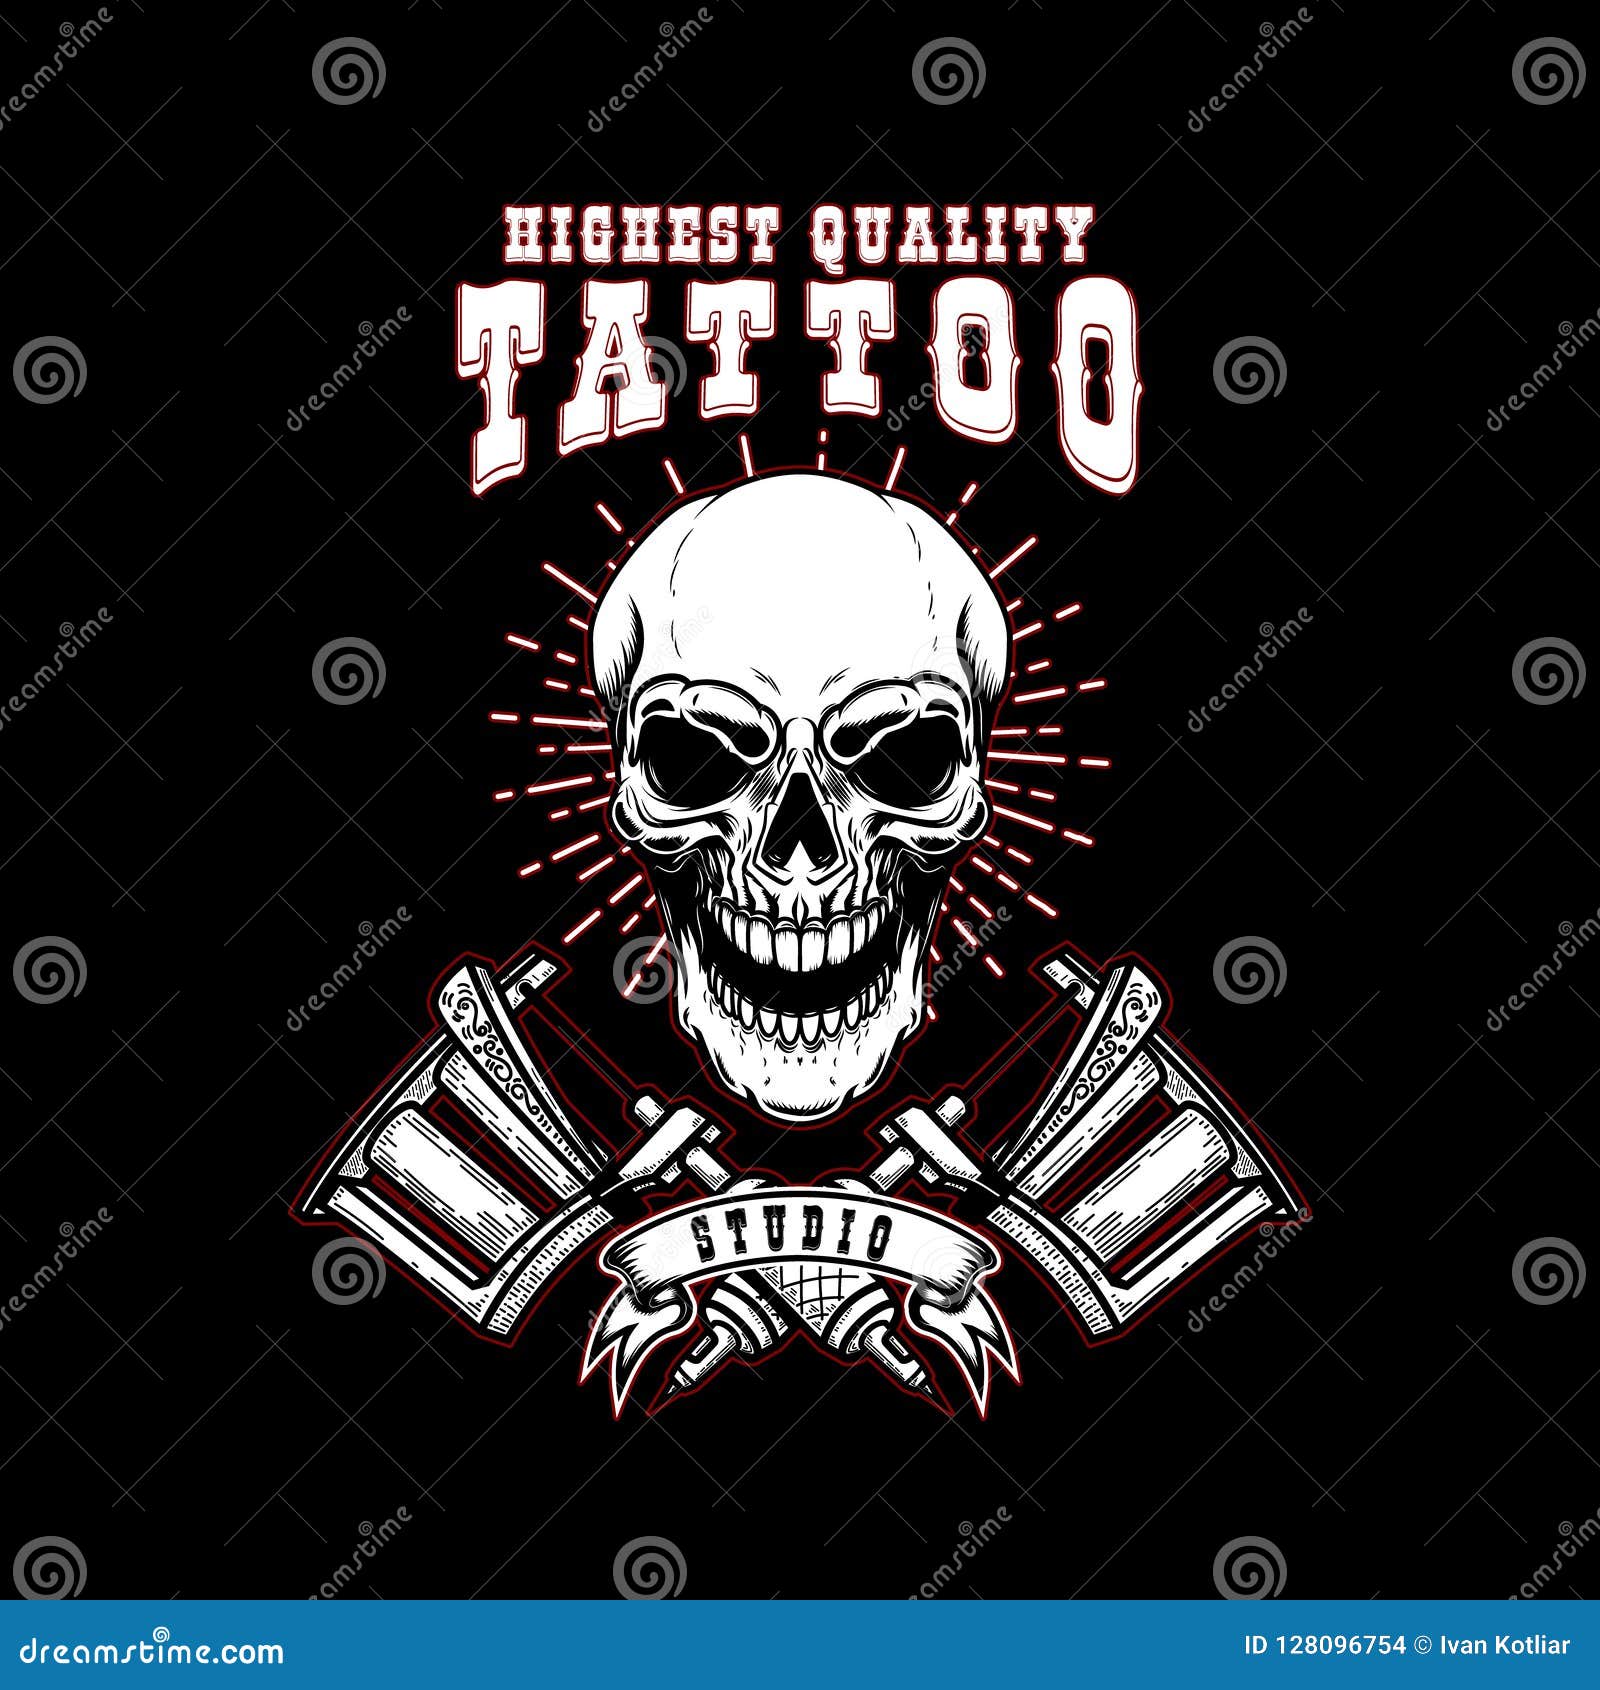 Tattoo Studio Emblem Template. Crossed Tattoo Machine, Skull ...